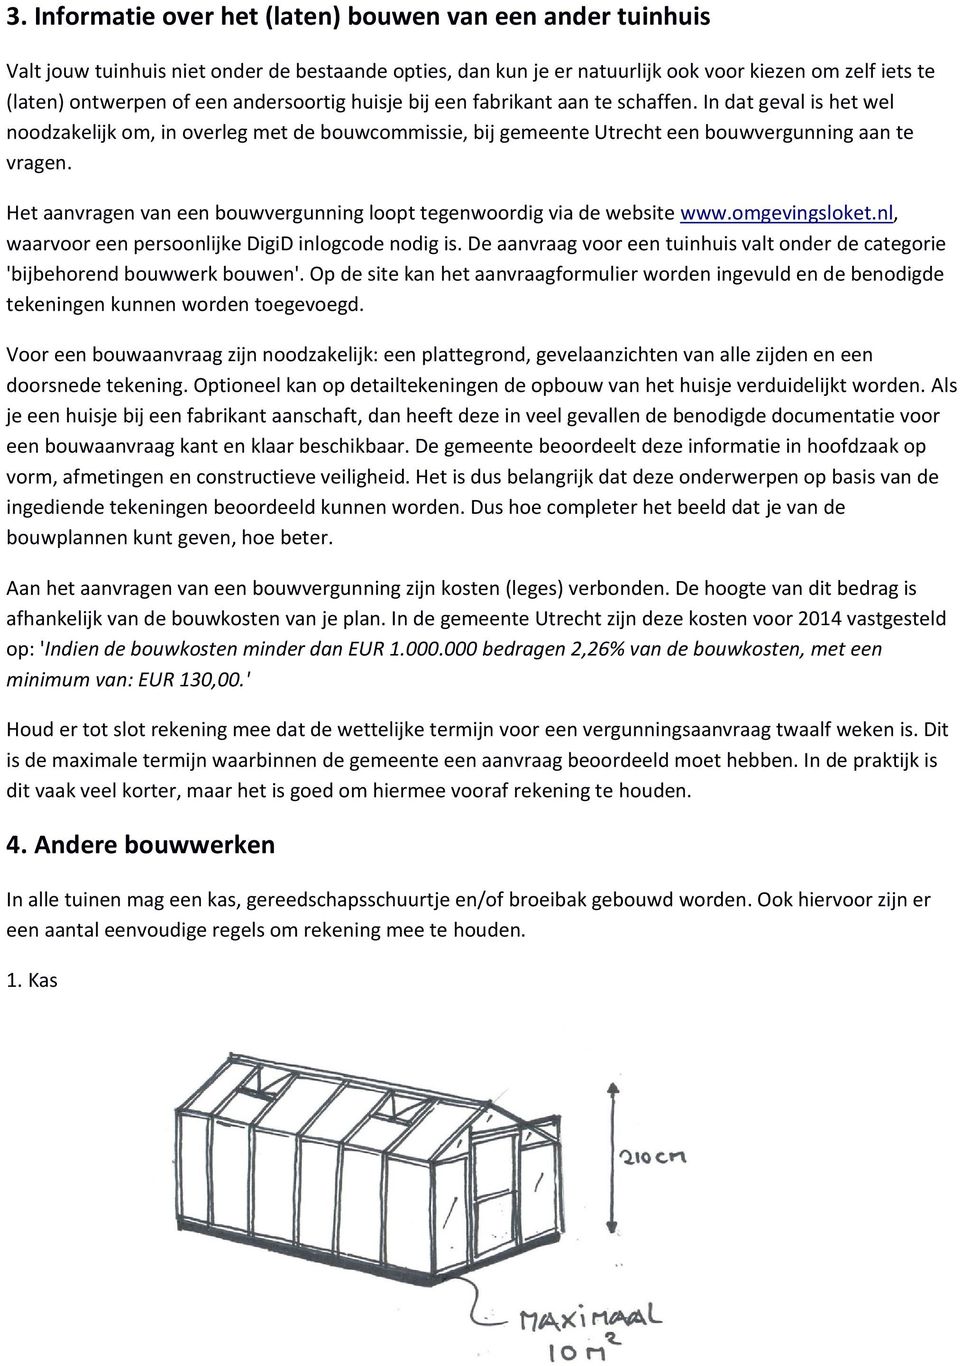 Het aanvragen van een bouwvergunning loopt tegenwoordig via de website www.omgevingsloket.nl, waarvoor een persoonlijke DigiD inlogcode nodig is.